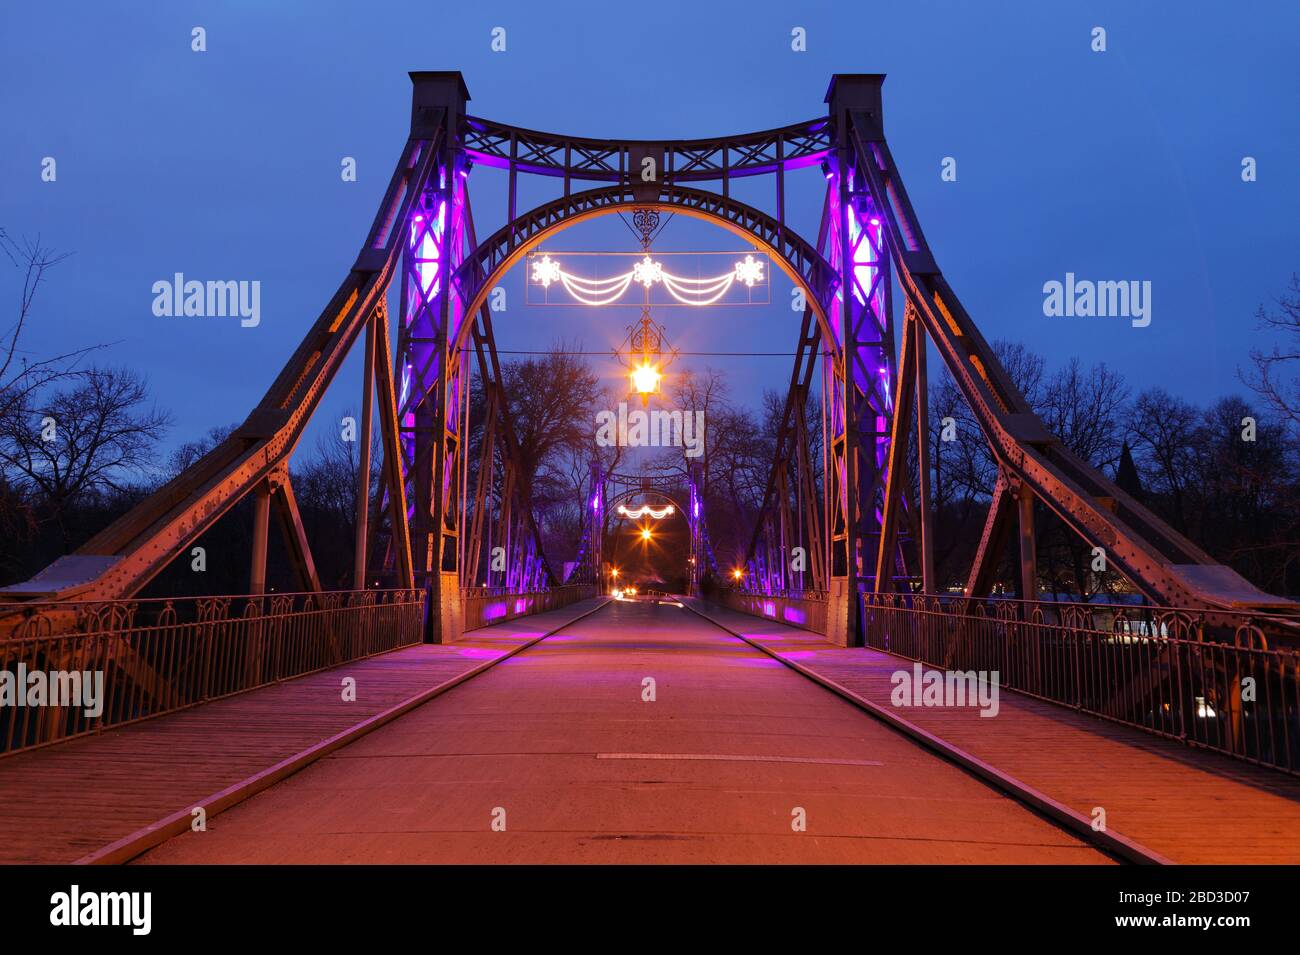 illumated Peissnitz bridge (Peißnitzbrücke) in Halle (Saale), Saxony-Anhalt, Germany Stock Photo